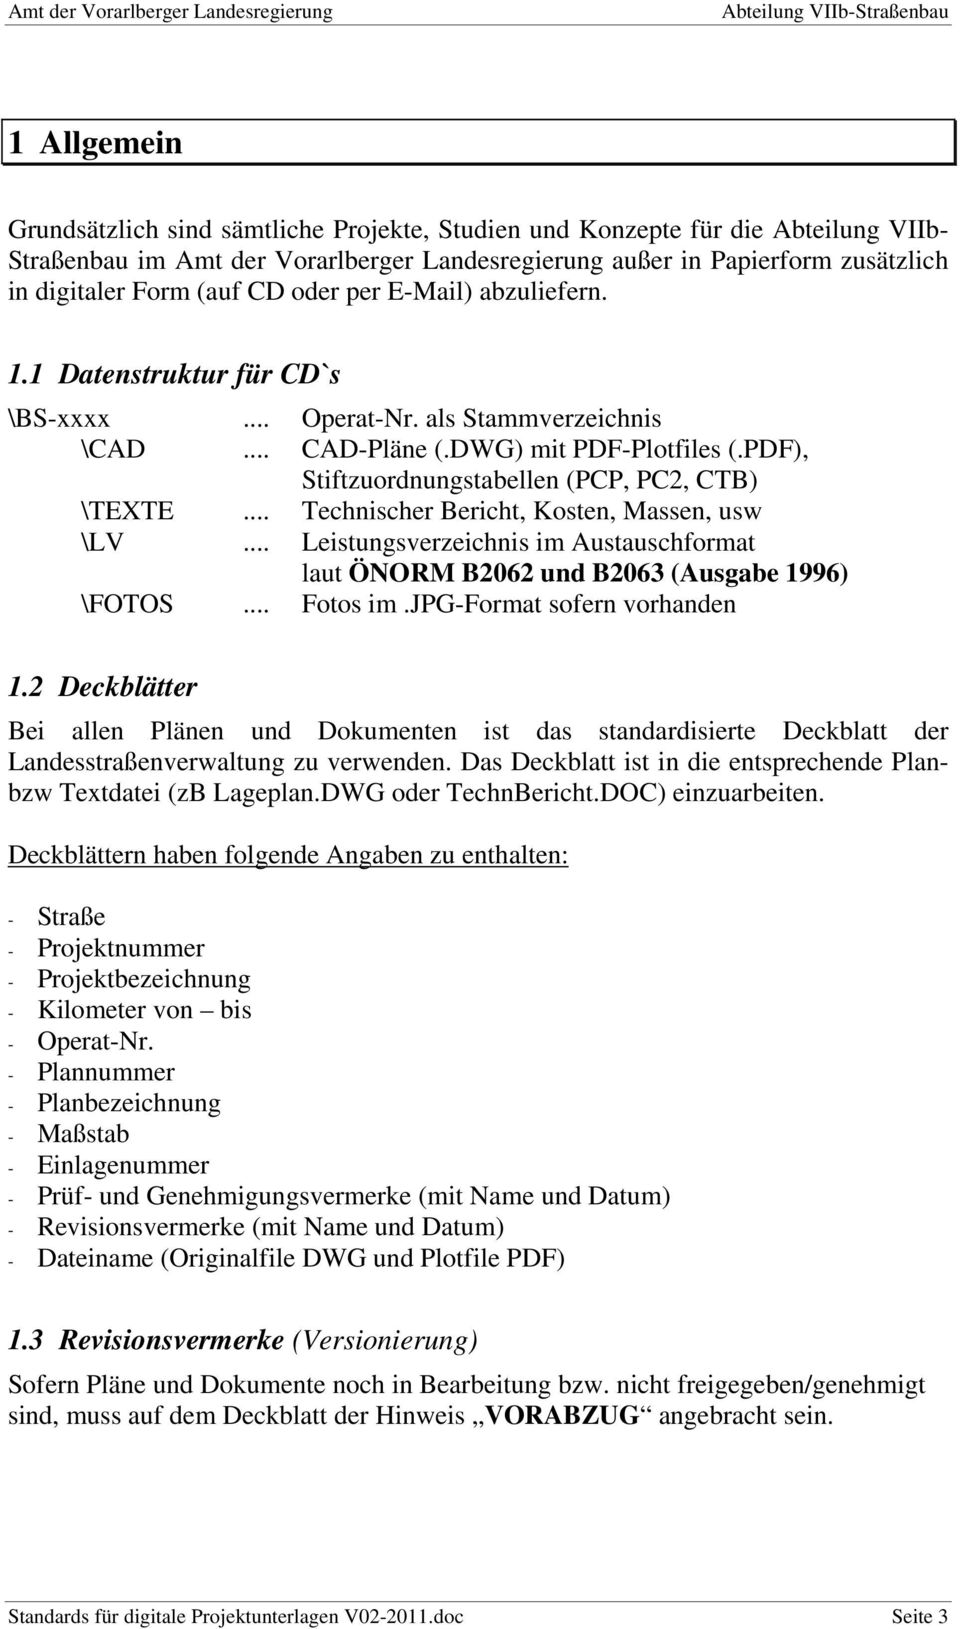 PDF), Stiftzuordnungstabellen (PCP, PC2, CTB) \TEXTE... Technischer Bericht, Kosten, Massen, usw \LV... Leistungsverzeichnis im Austauschformat laut ÖNORM B2062 und B2063 (Ausgabe 1996) \FOTOS.